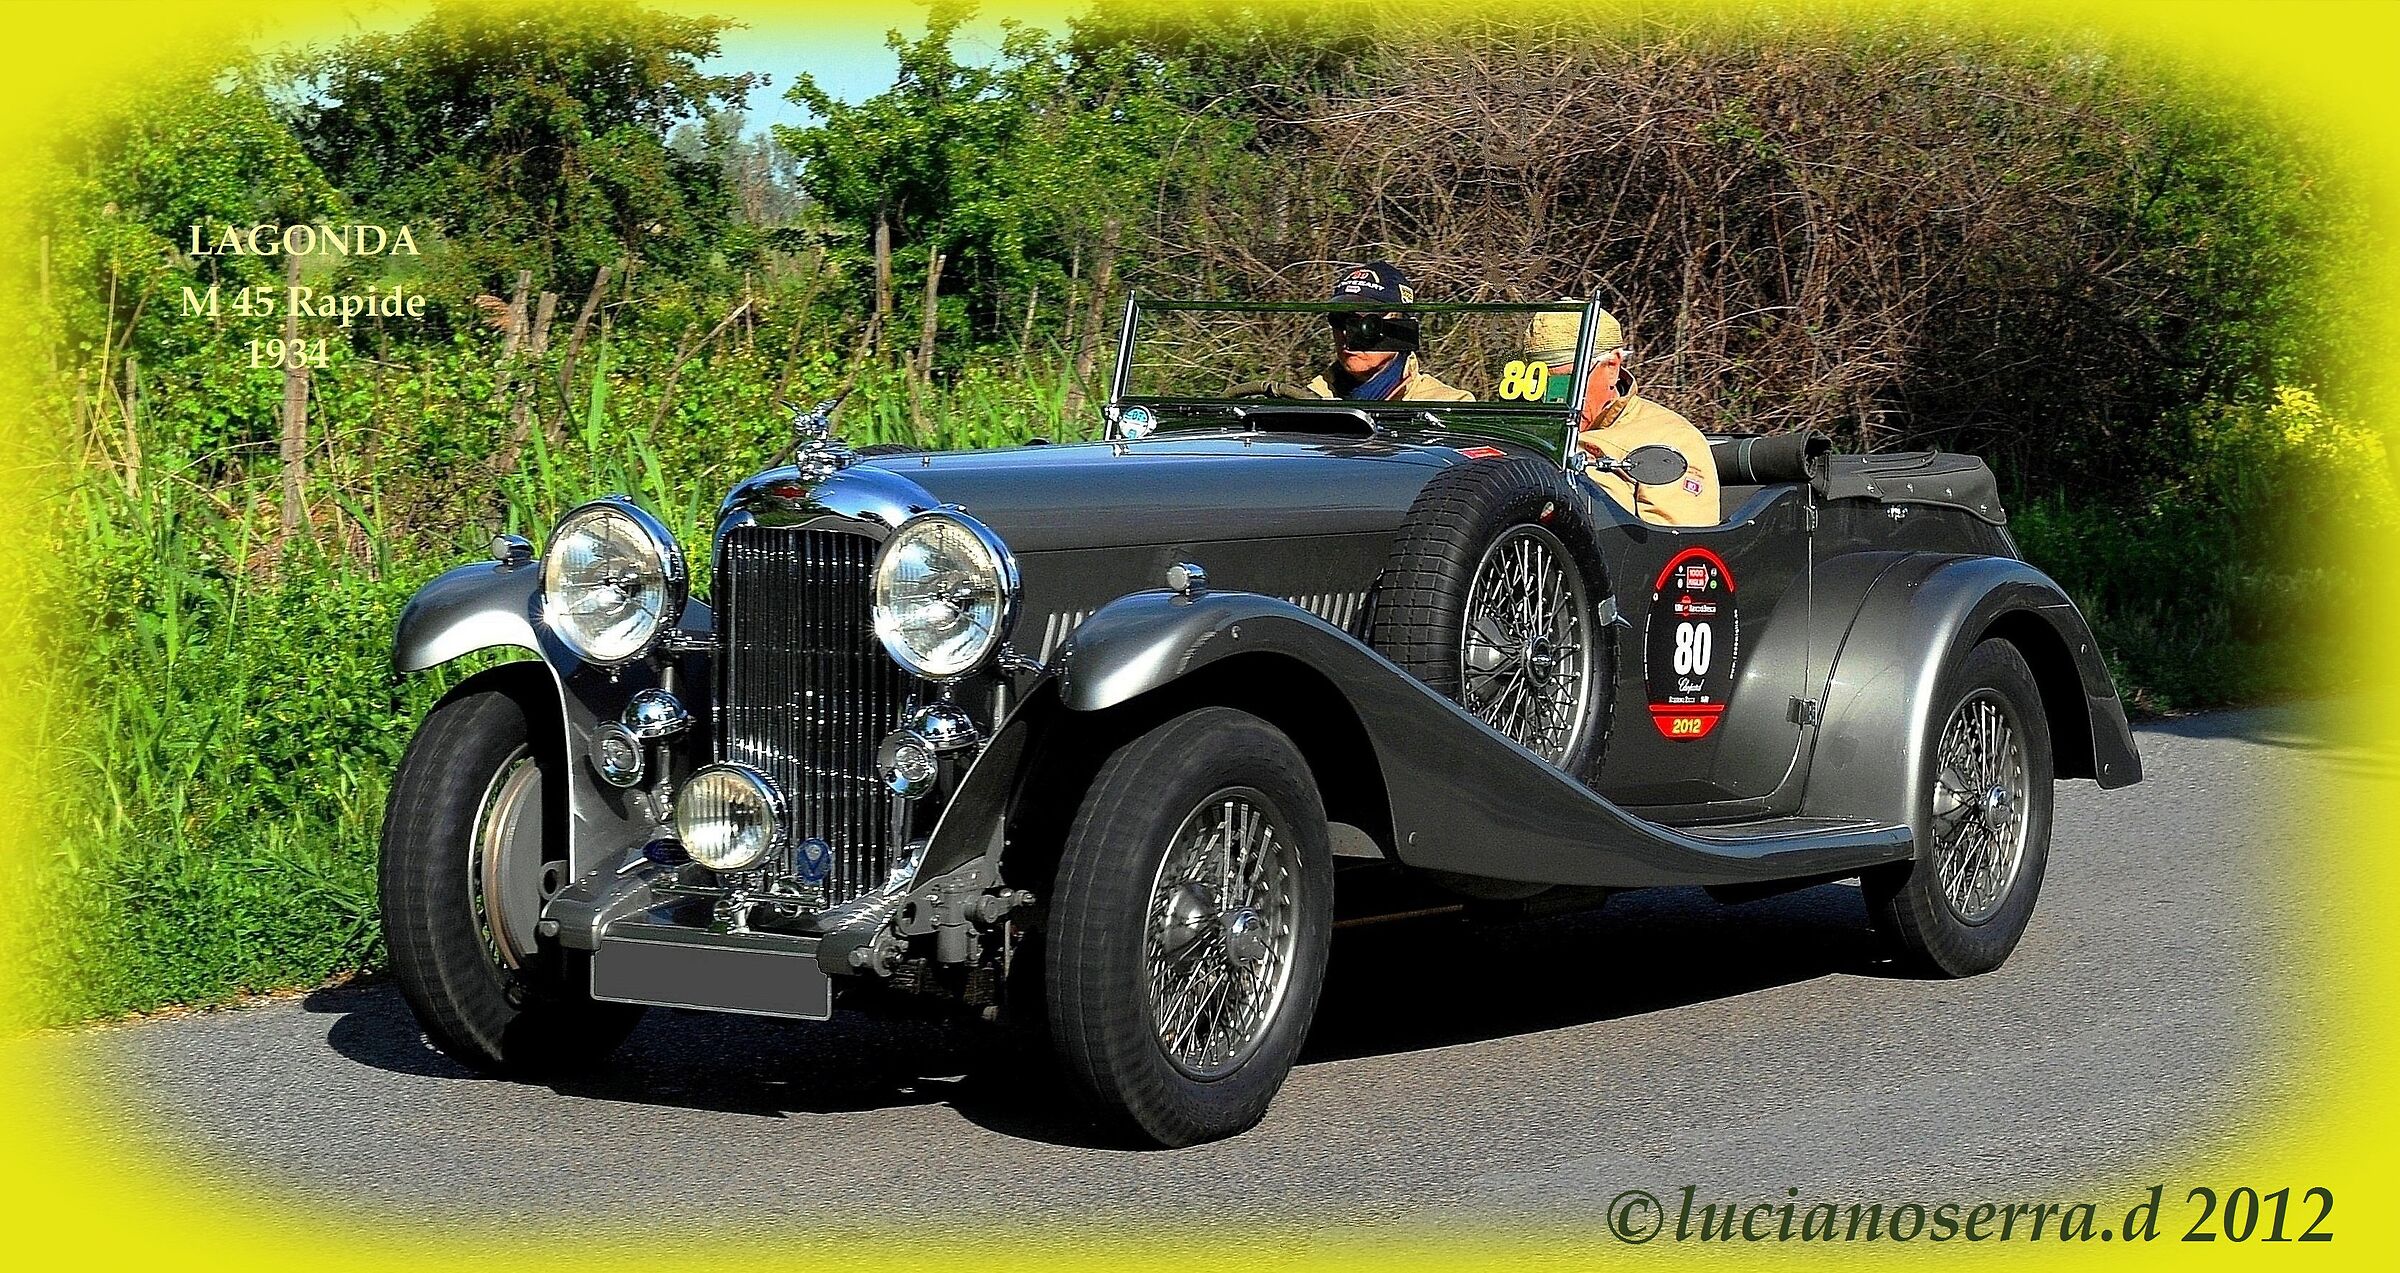 Lagonda M 45 Rapide Turismo - 1934...